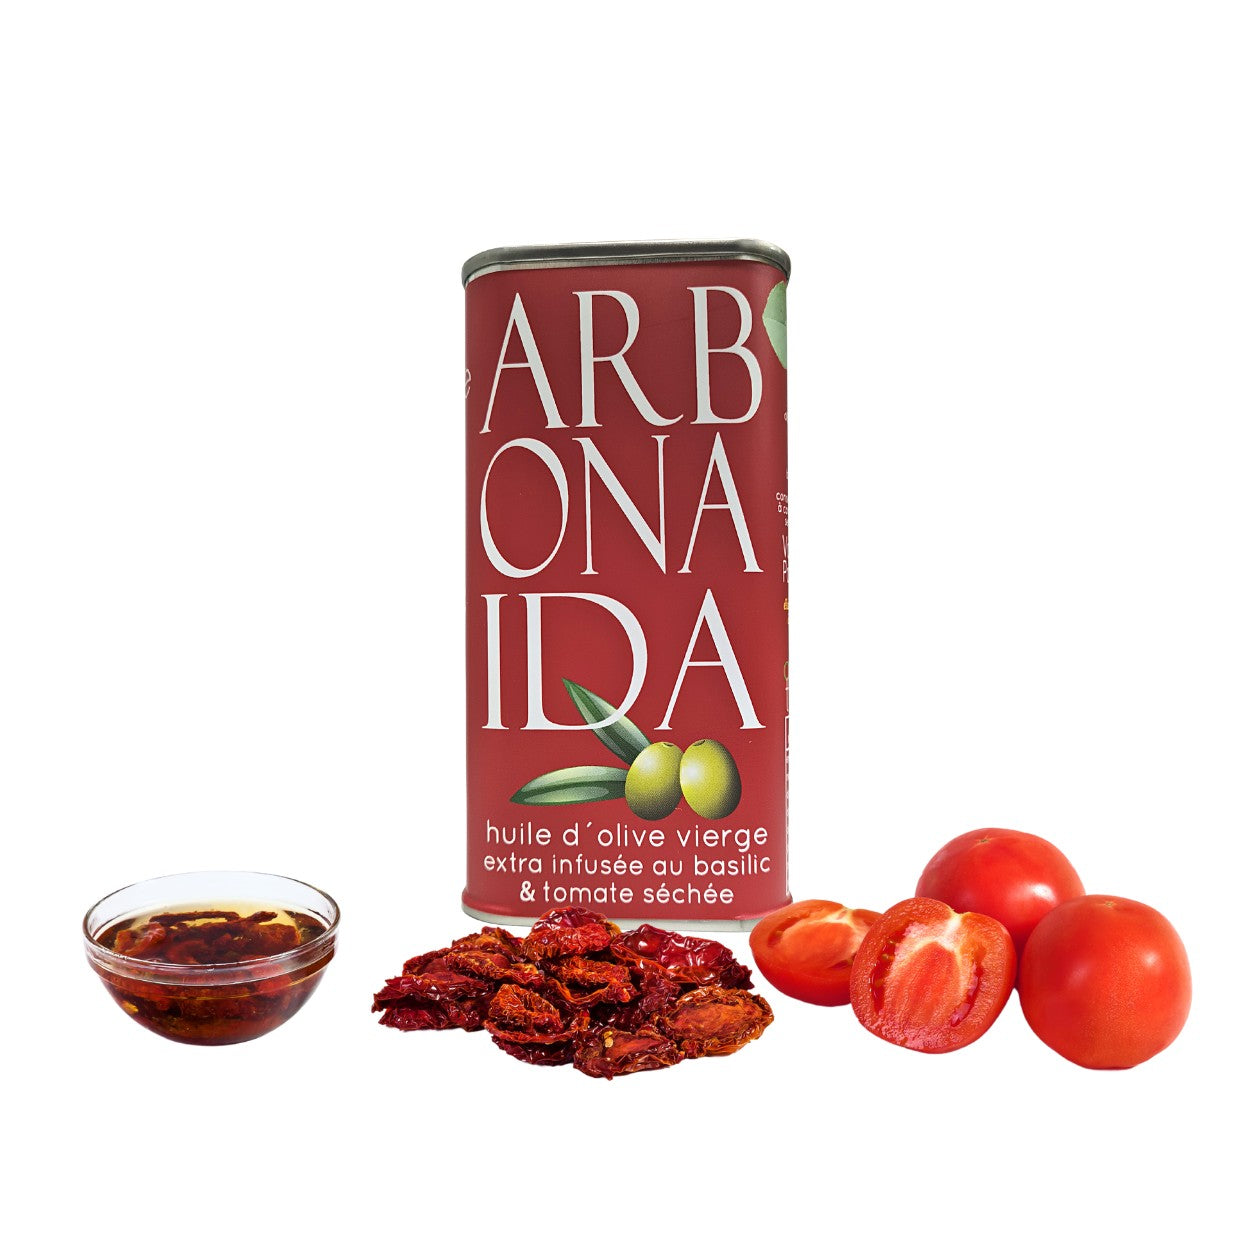 AOVE aromatizado con Albahaca y Tomate seco. 250 ml Arbonaida